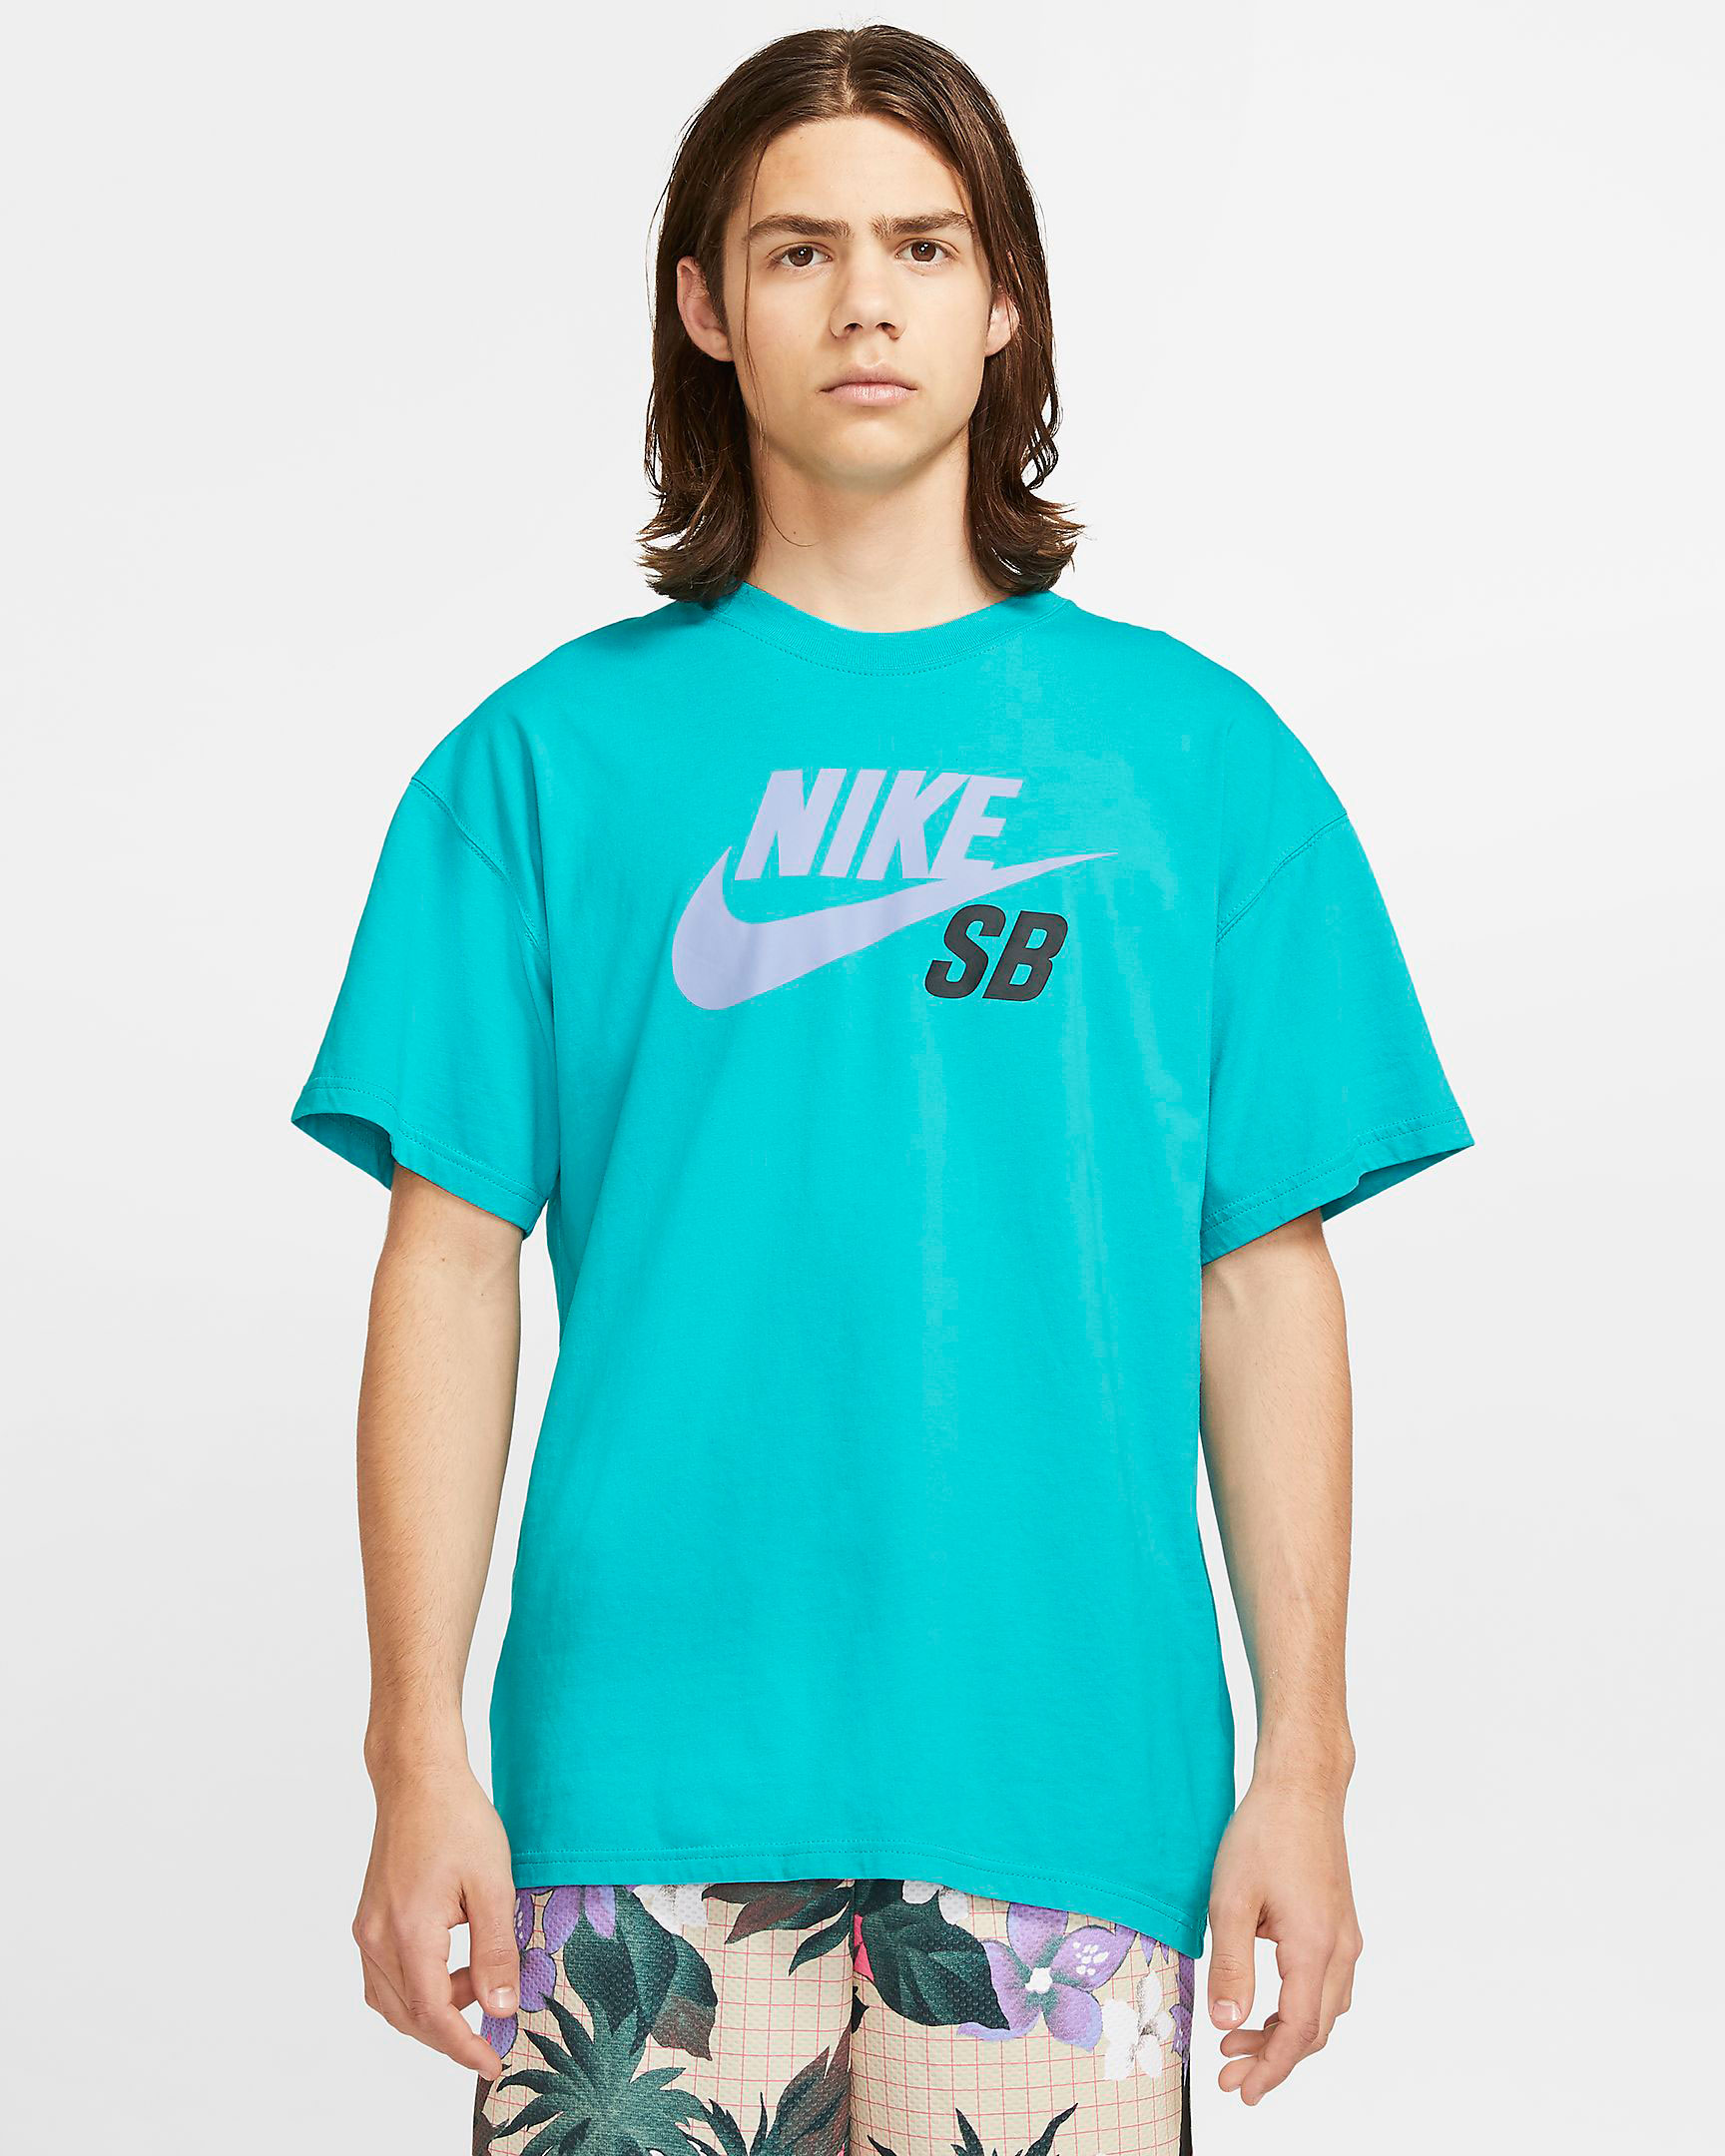 nike-sb-skate-aqua-shirt